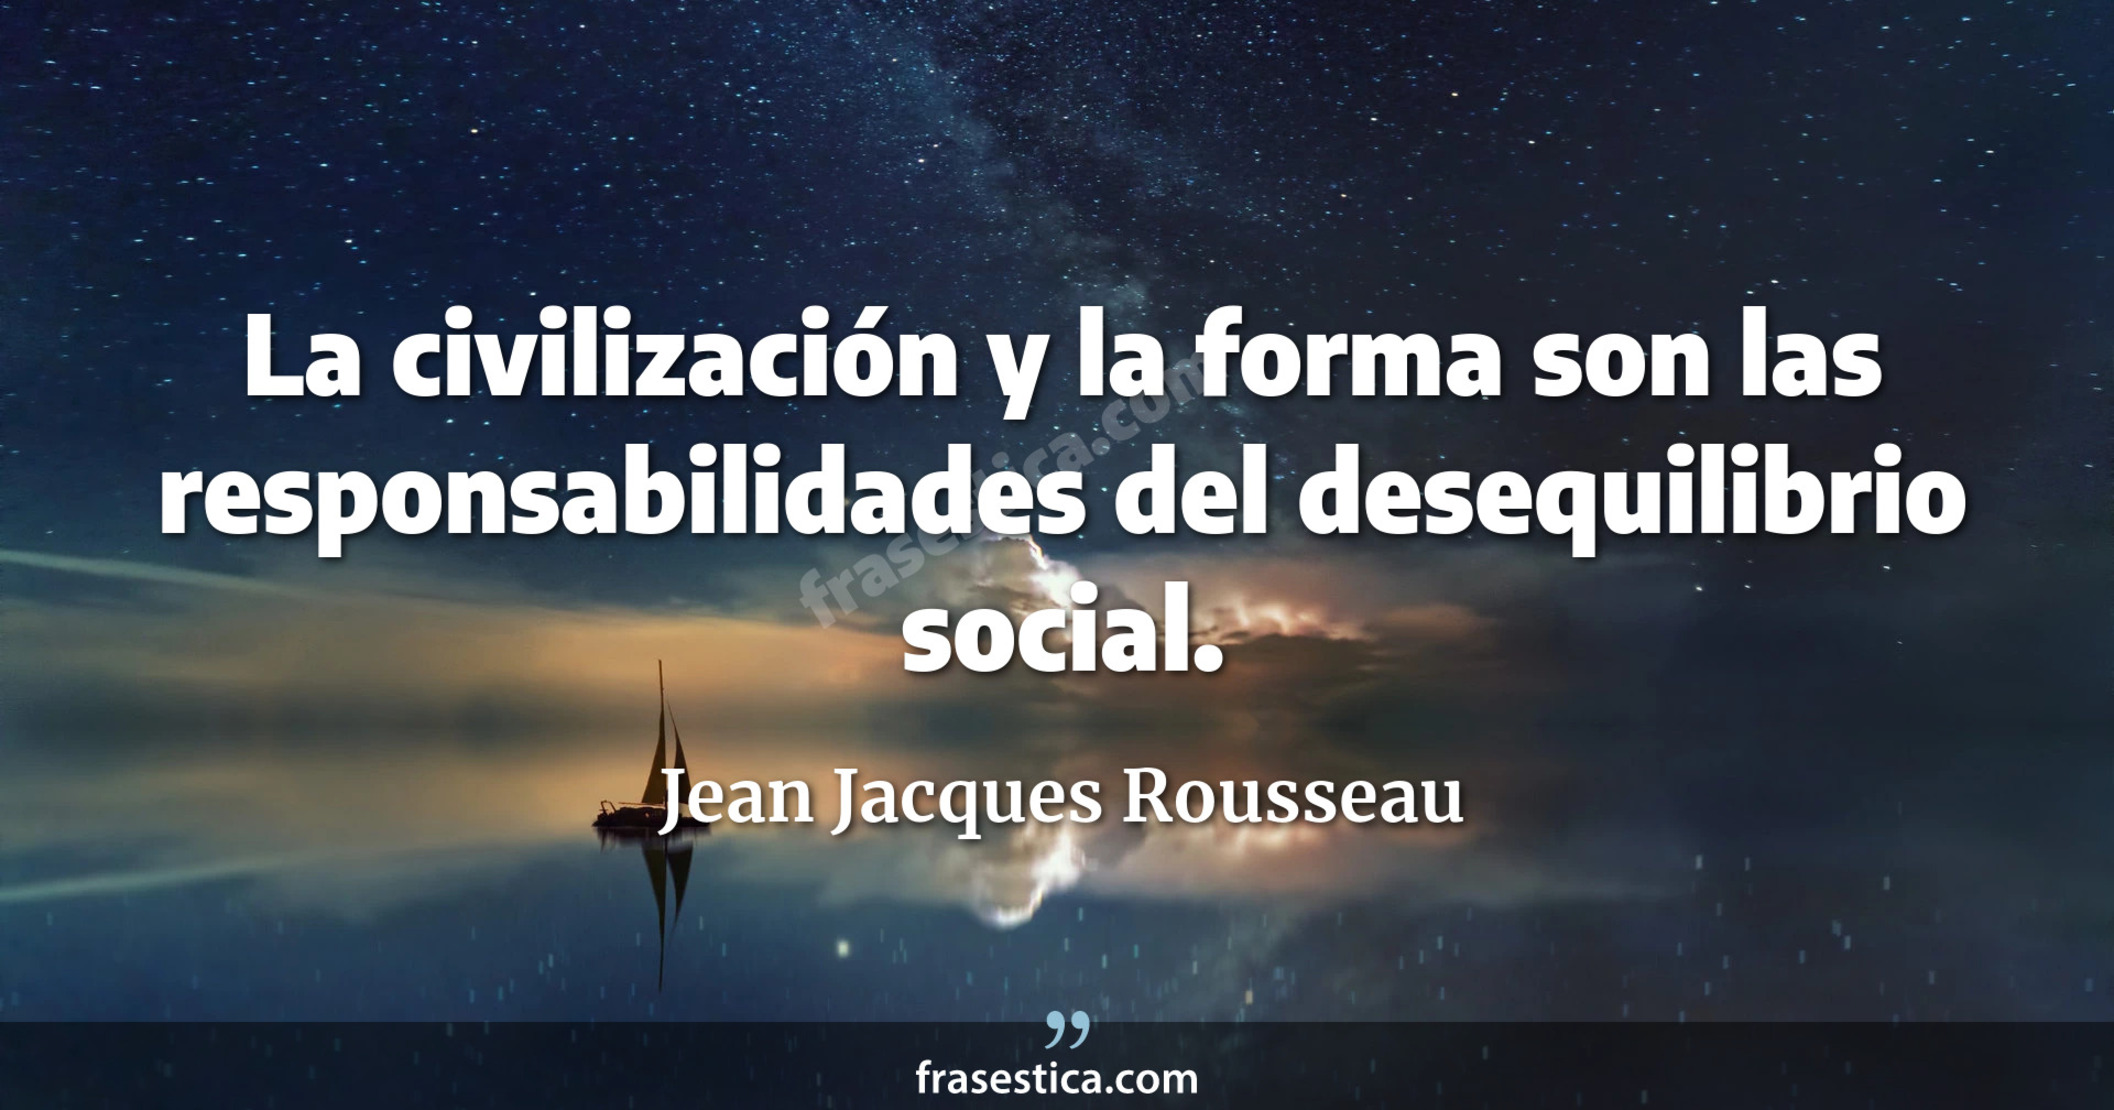 La civilización y la forma son las responsabilidades del desequilibrio social. - Jean Jacques Rousseau